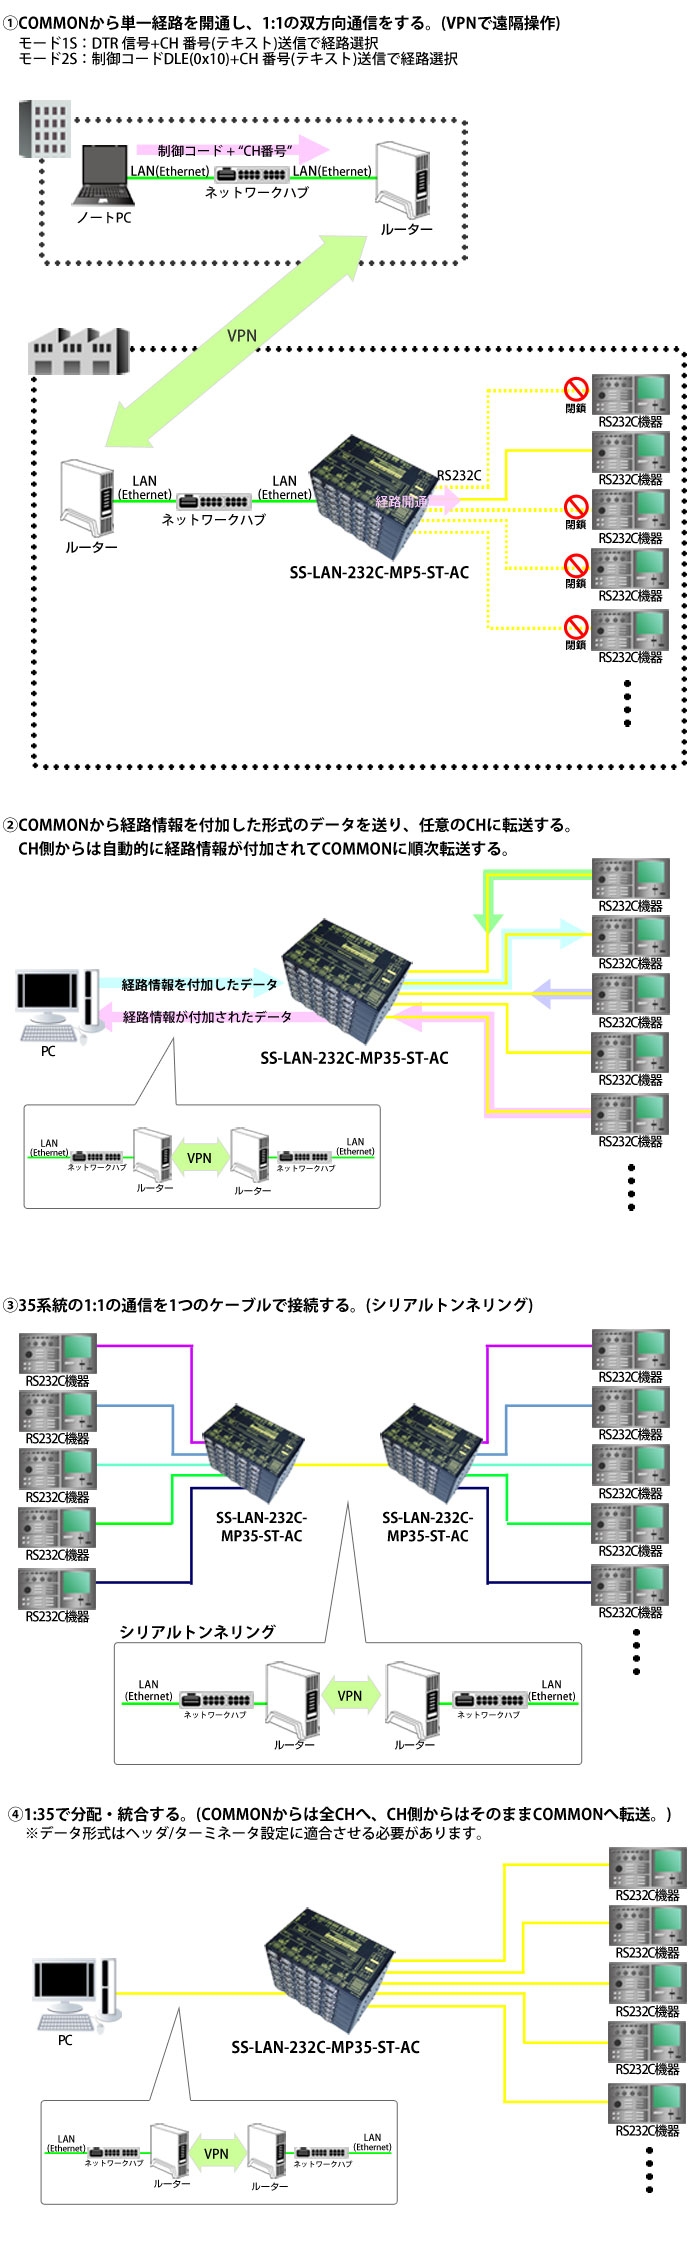 SS-LAN-232C-MP35-ST-AC接続例